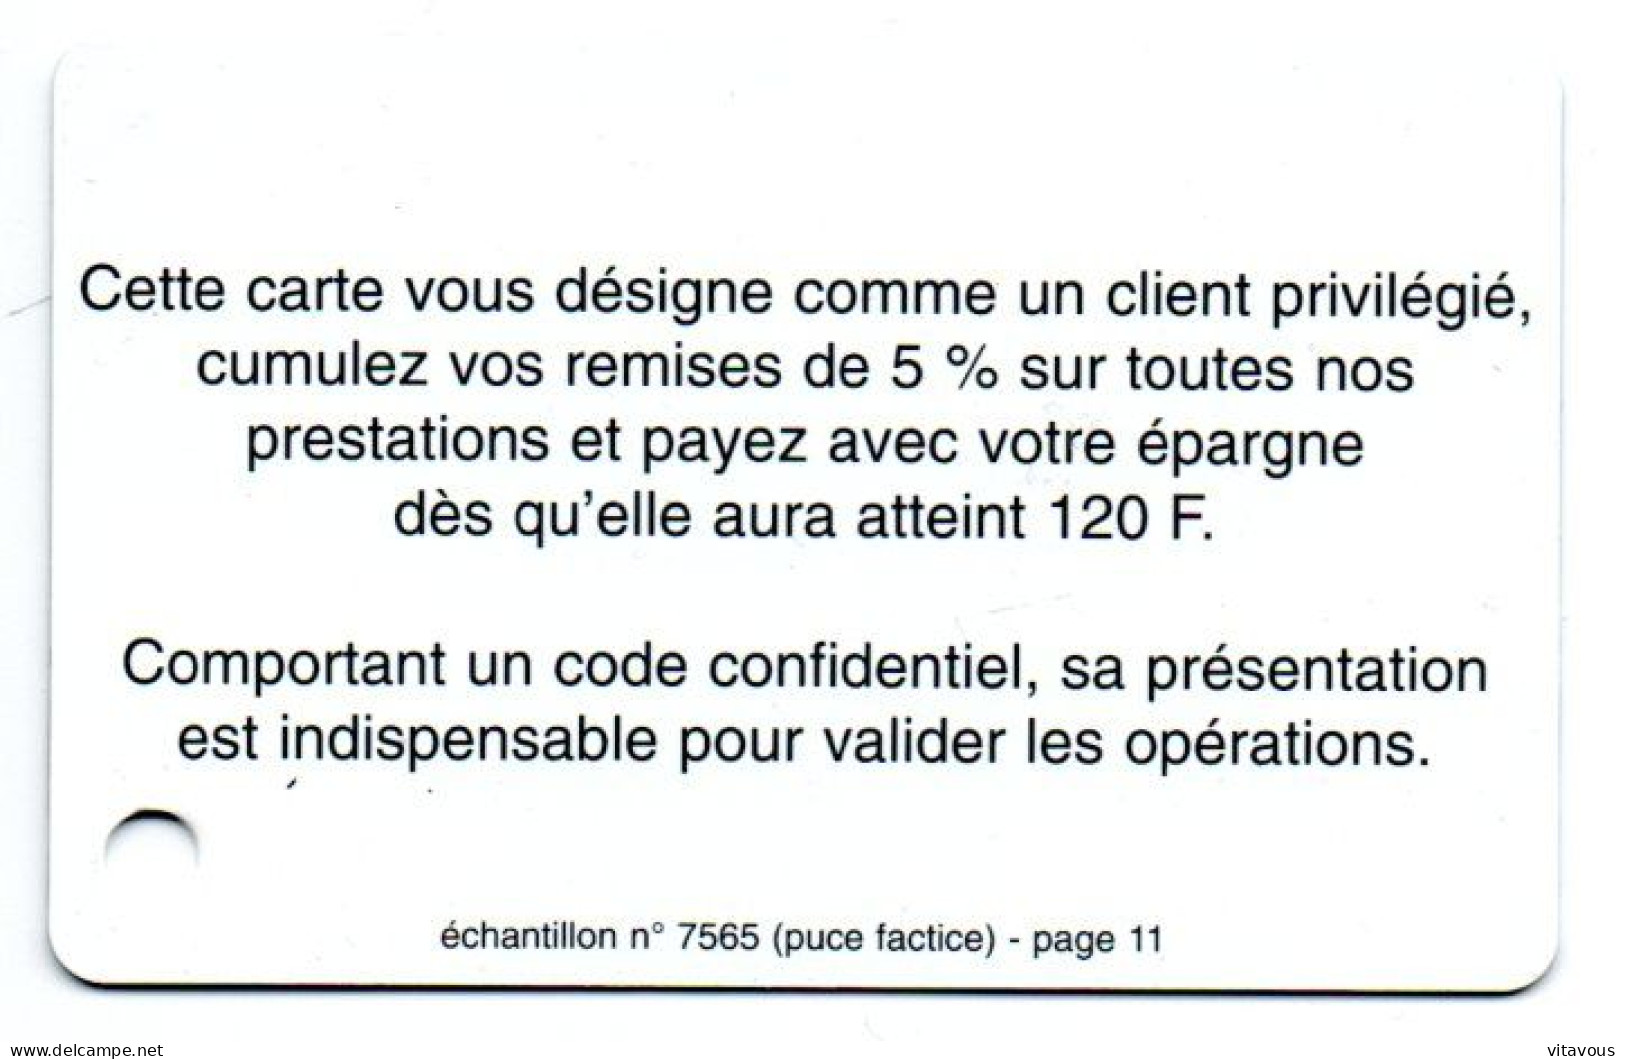 Piène Monnaie Argent  Carte Fidélité FRANCE  NBS   Card Karte (R 804) - Cartes De Salon Et Démonstration